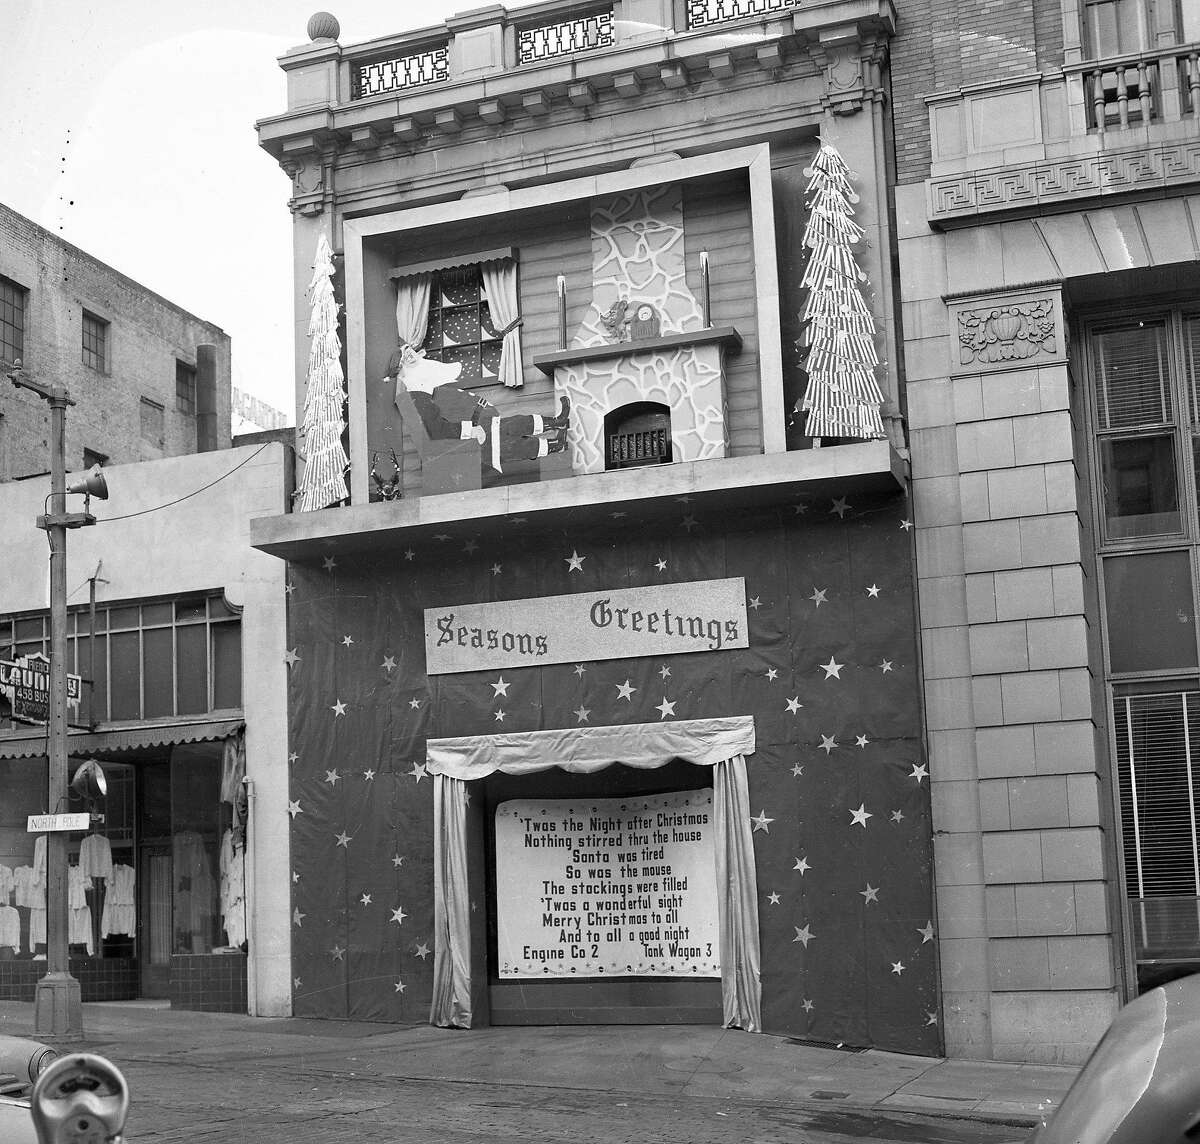 19. Dezember 1949: Mitarbeiter der Feuerwehr von San Francisco haben die Fassaden ihrer Feuerwehrhäuser in einem weihnachtlichen Wettbewerb von 1948 bis 1950 verkleidet.